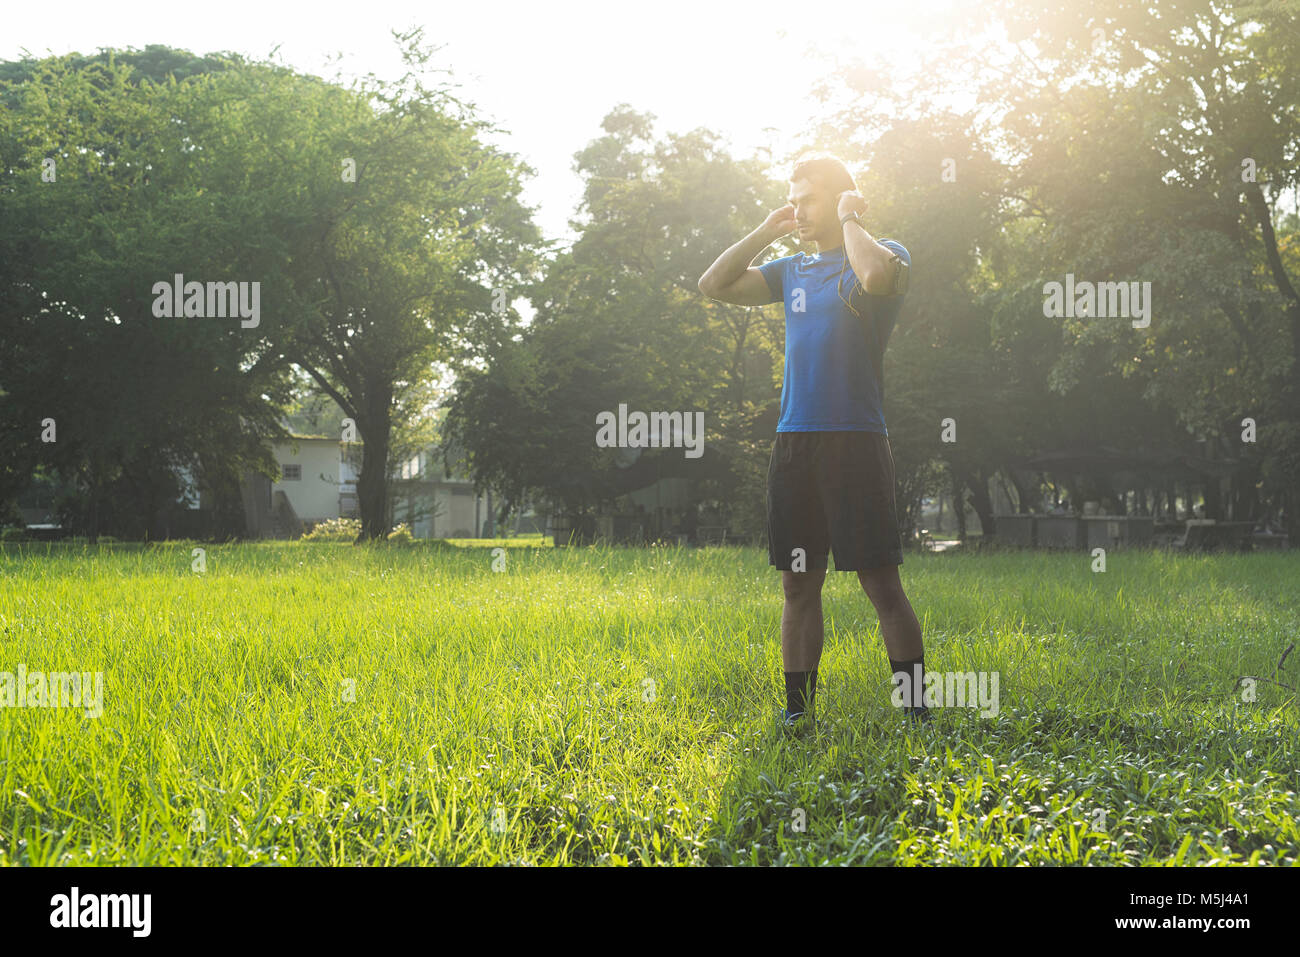 Runner standing in urban park, wearing headphones Stock Photo